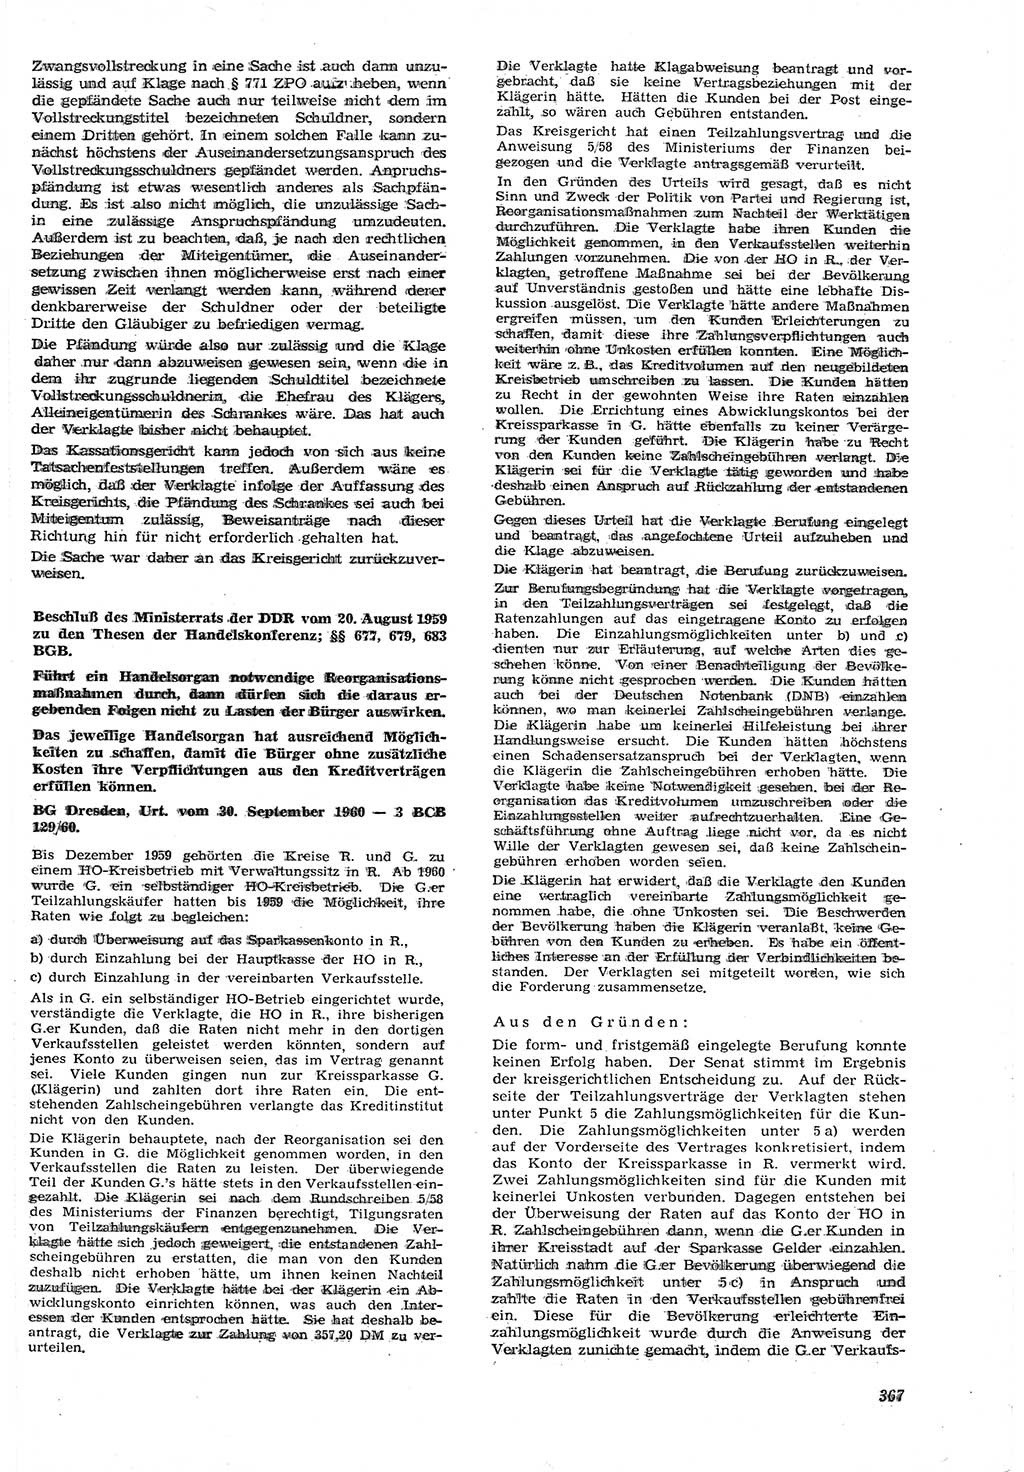 Neue Justiz (NJ), Zeitschrift für Recht und Rechtswissenschaft [Deutsche Demokratische Republik (DDR)], 15. Jahrgang 1961, Seite 367 (NJ DDR 1961, S. 367)